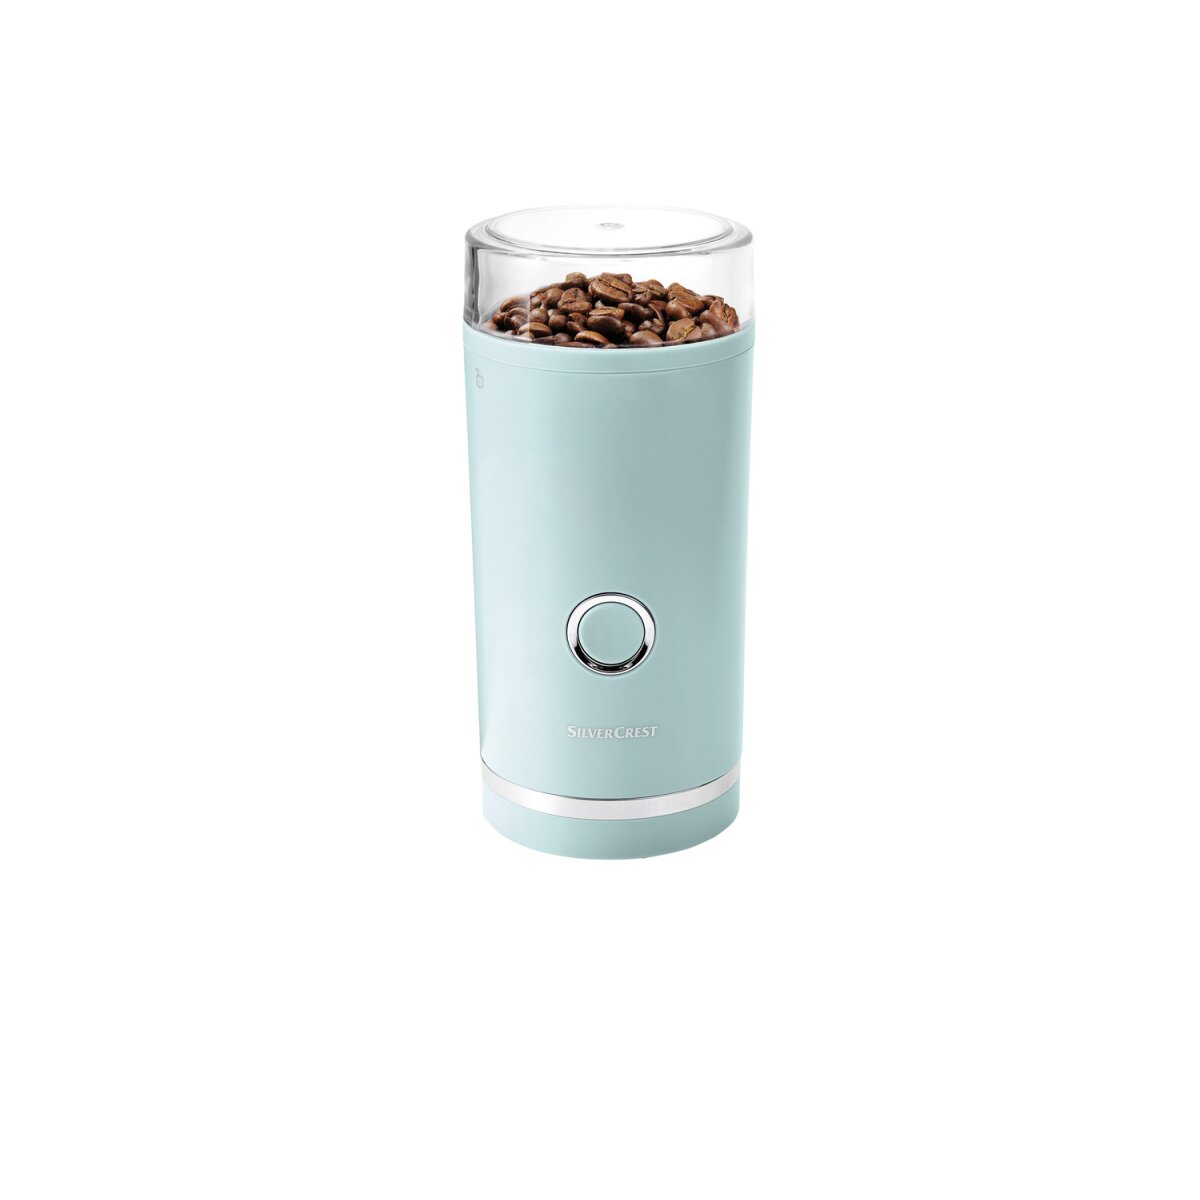 SILVERCREST® KITCHEN TOOLS Elektrische Kaffeemühle, 180 W - B-Ware, 7,99 €